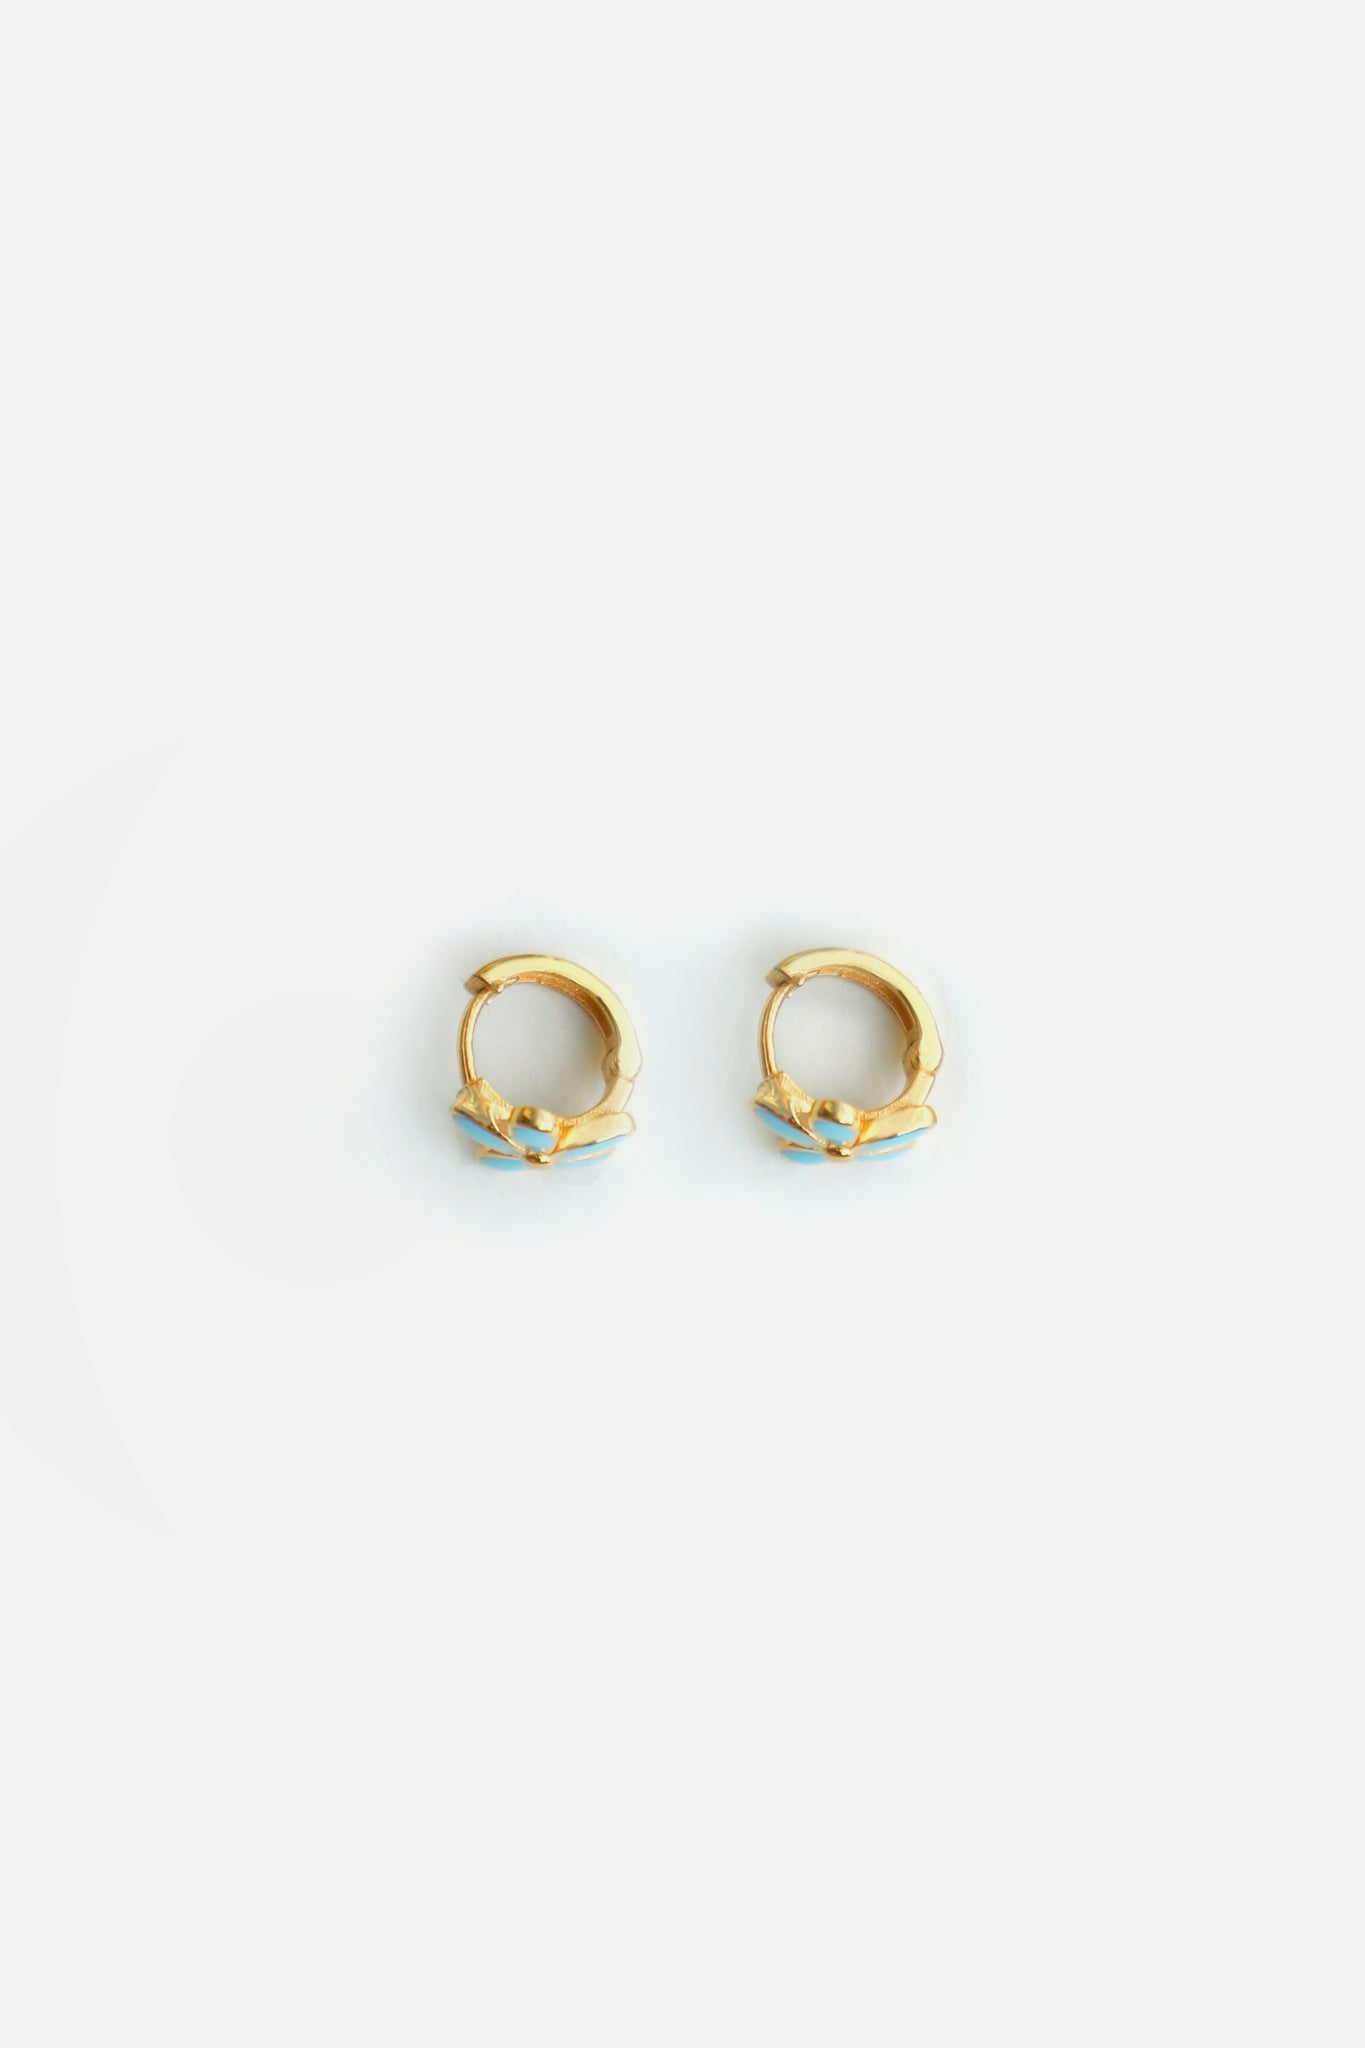 Buy Latest 1 Gram Gold Daily Use Hoop Earrings for Kids